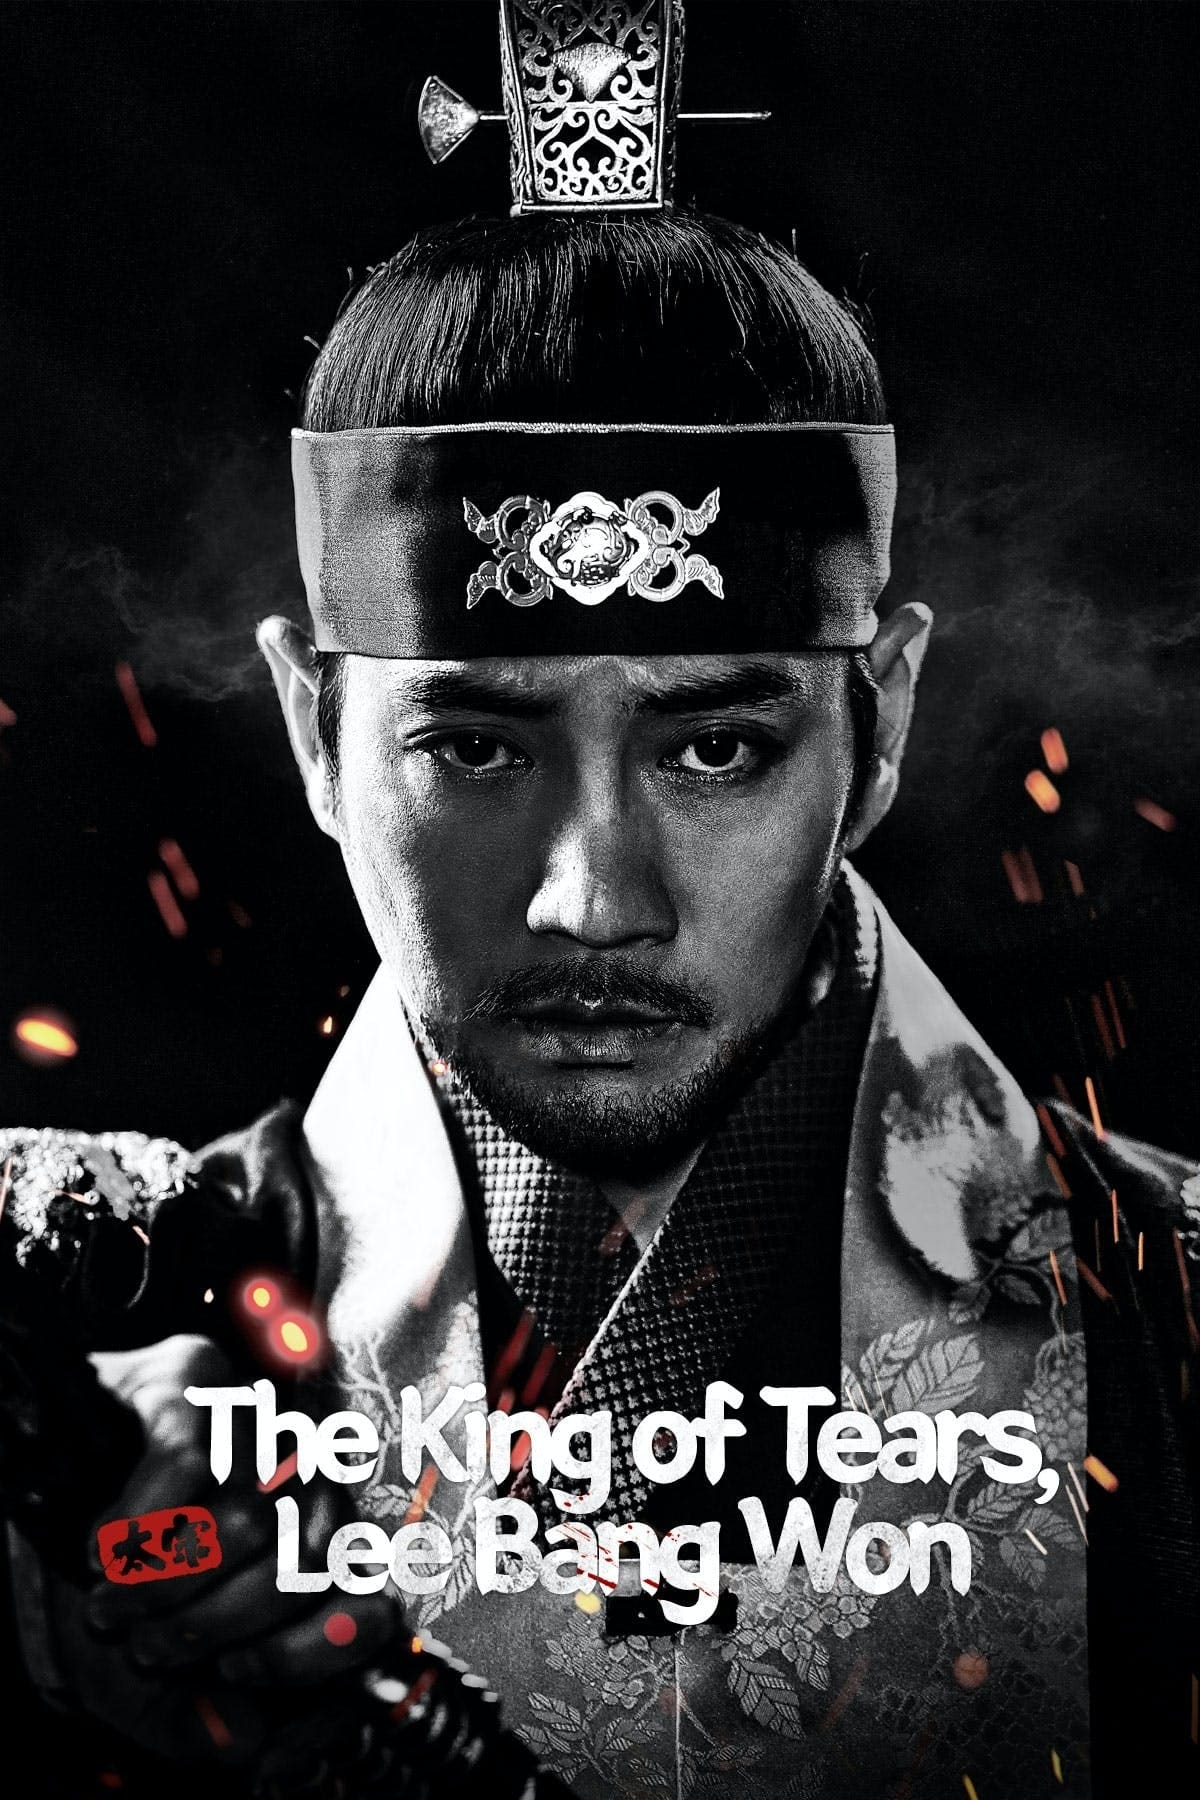 مسلسل ملك الدموع، لي بانج ون The King Of Tears, Lee Bang Won الحلقة 20 العشرون